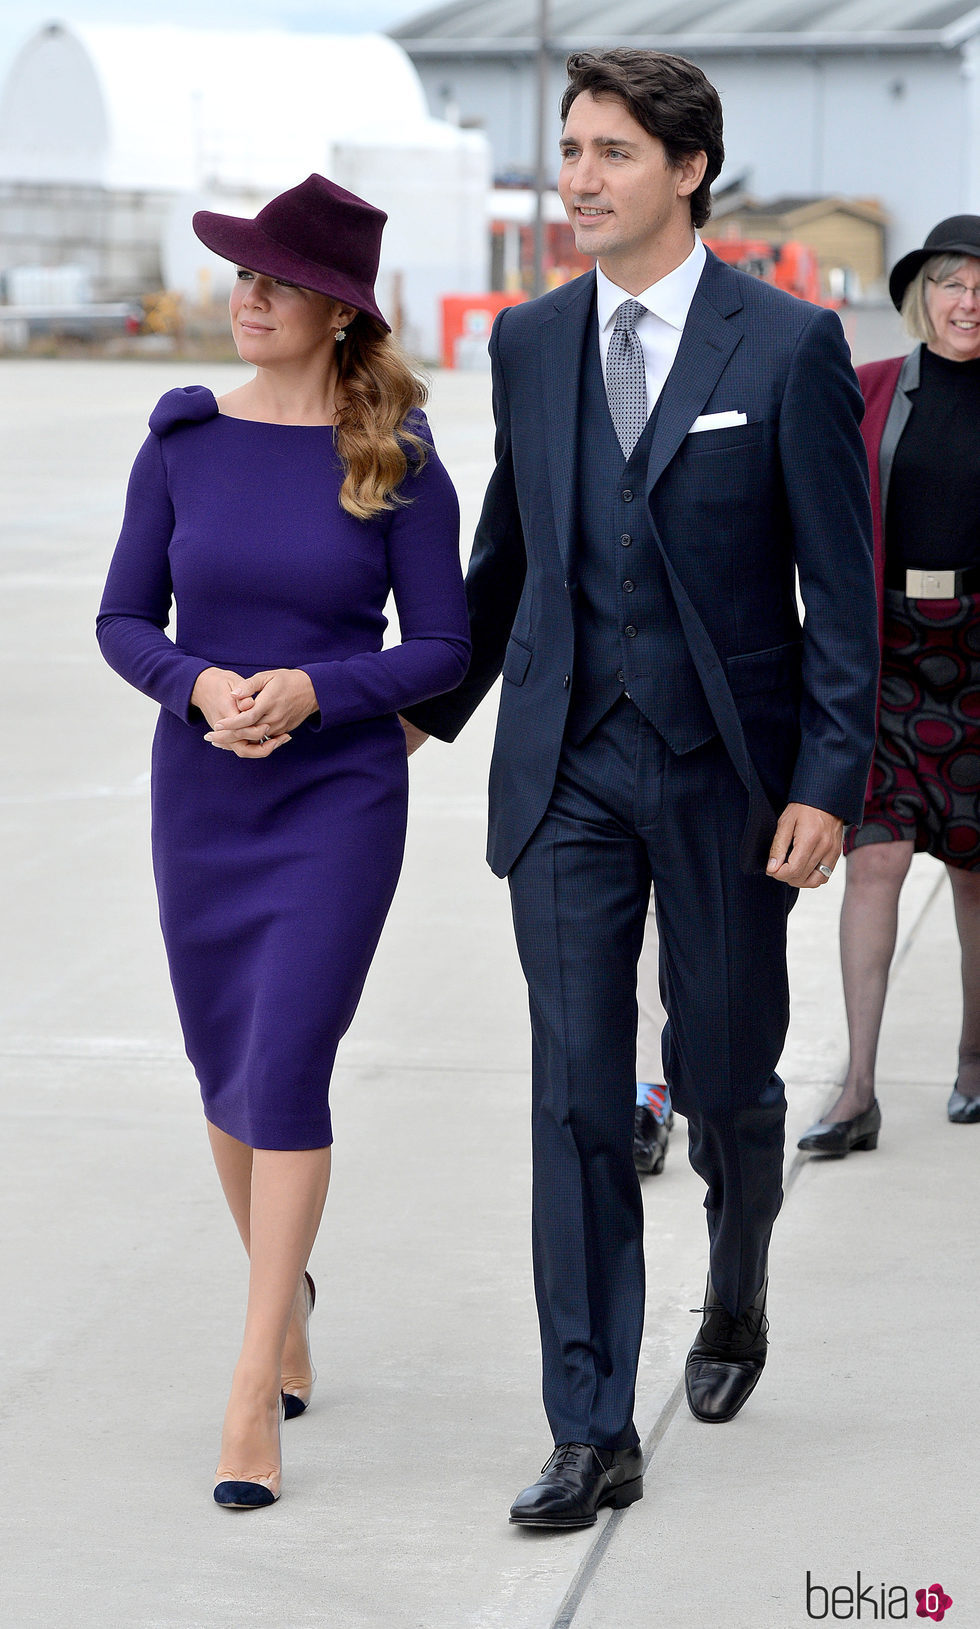 Justin Trudeau y su mujer reciben a los Duques de Cambridge y sus hijos en Canadá